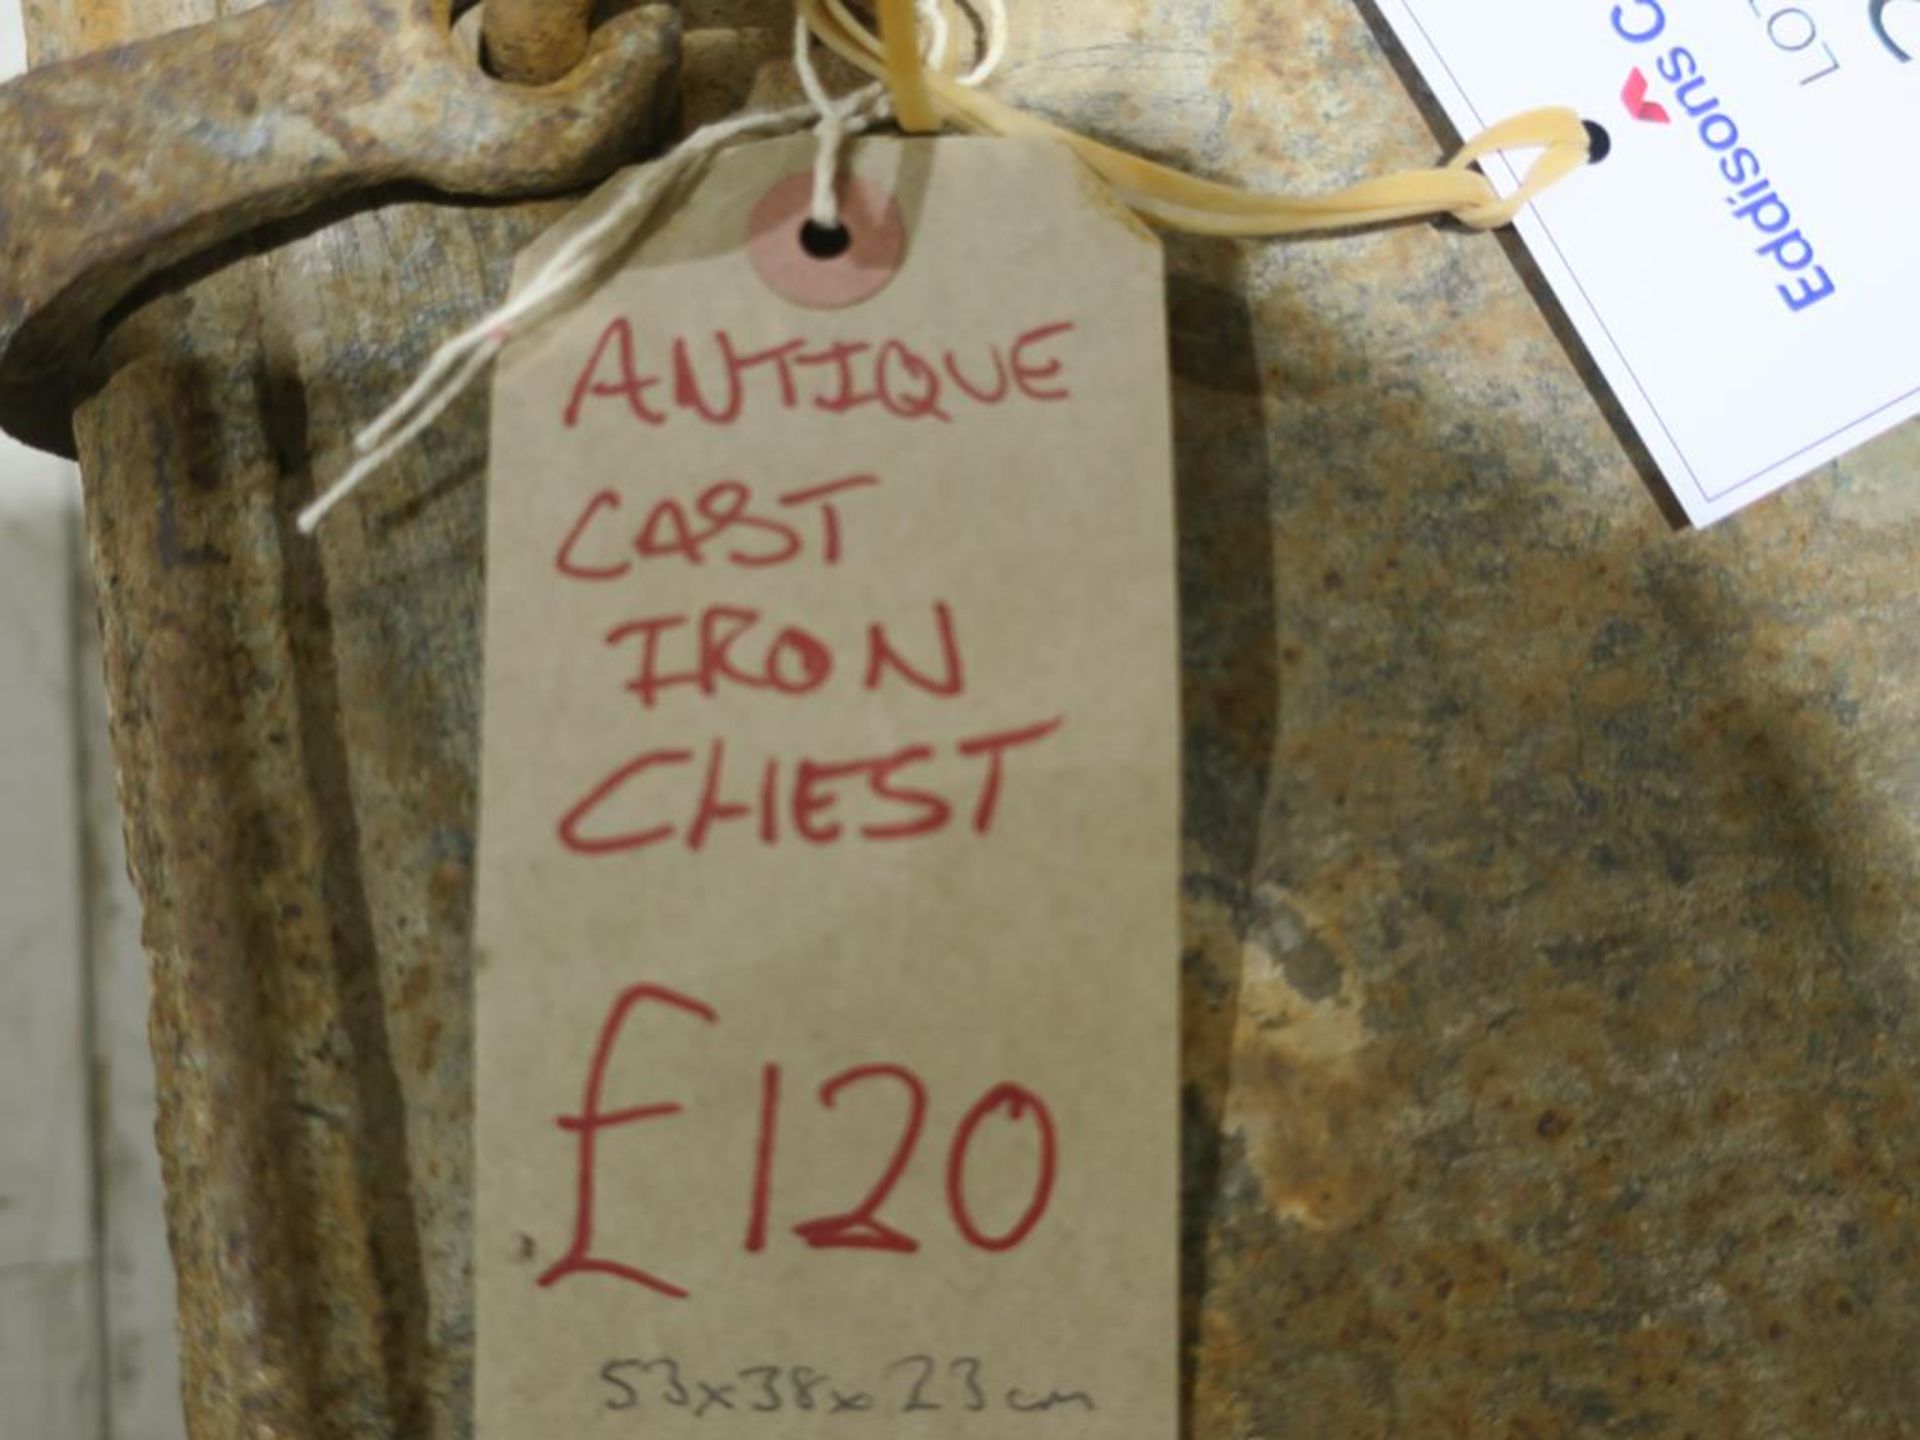 * An Antique Cast Iron Deed Chest (53cm x 38cm x 23cm) (RRP £120) - Image 4 of 4